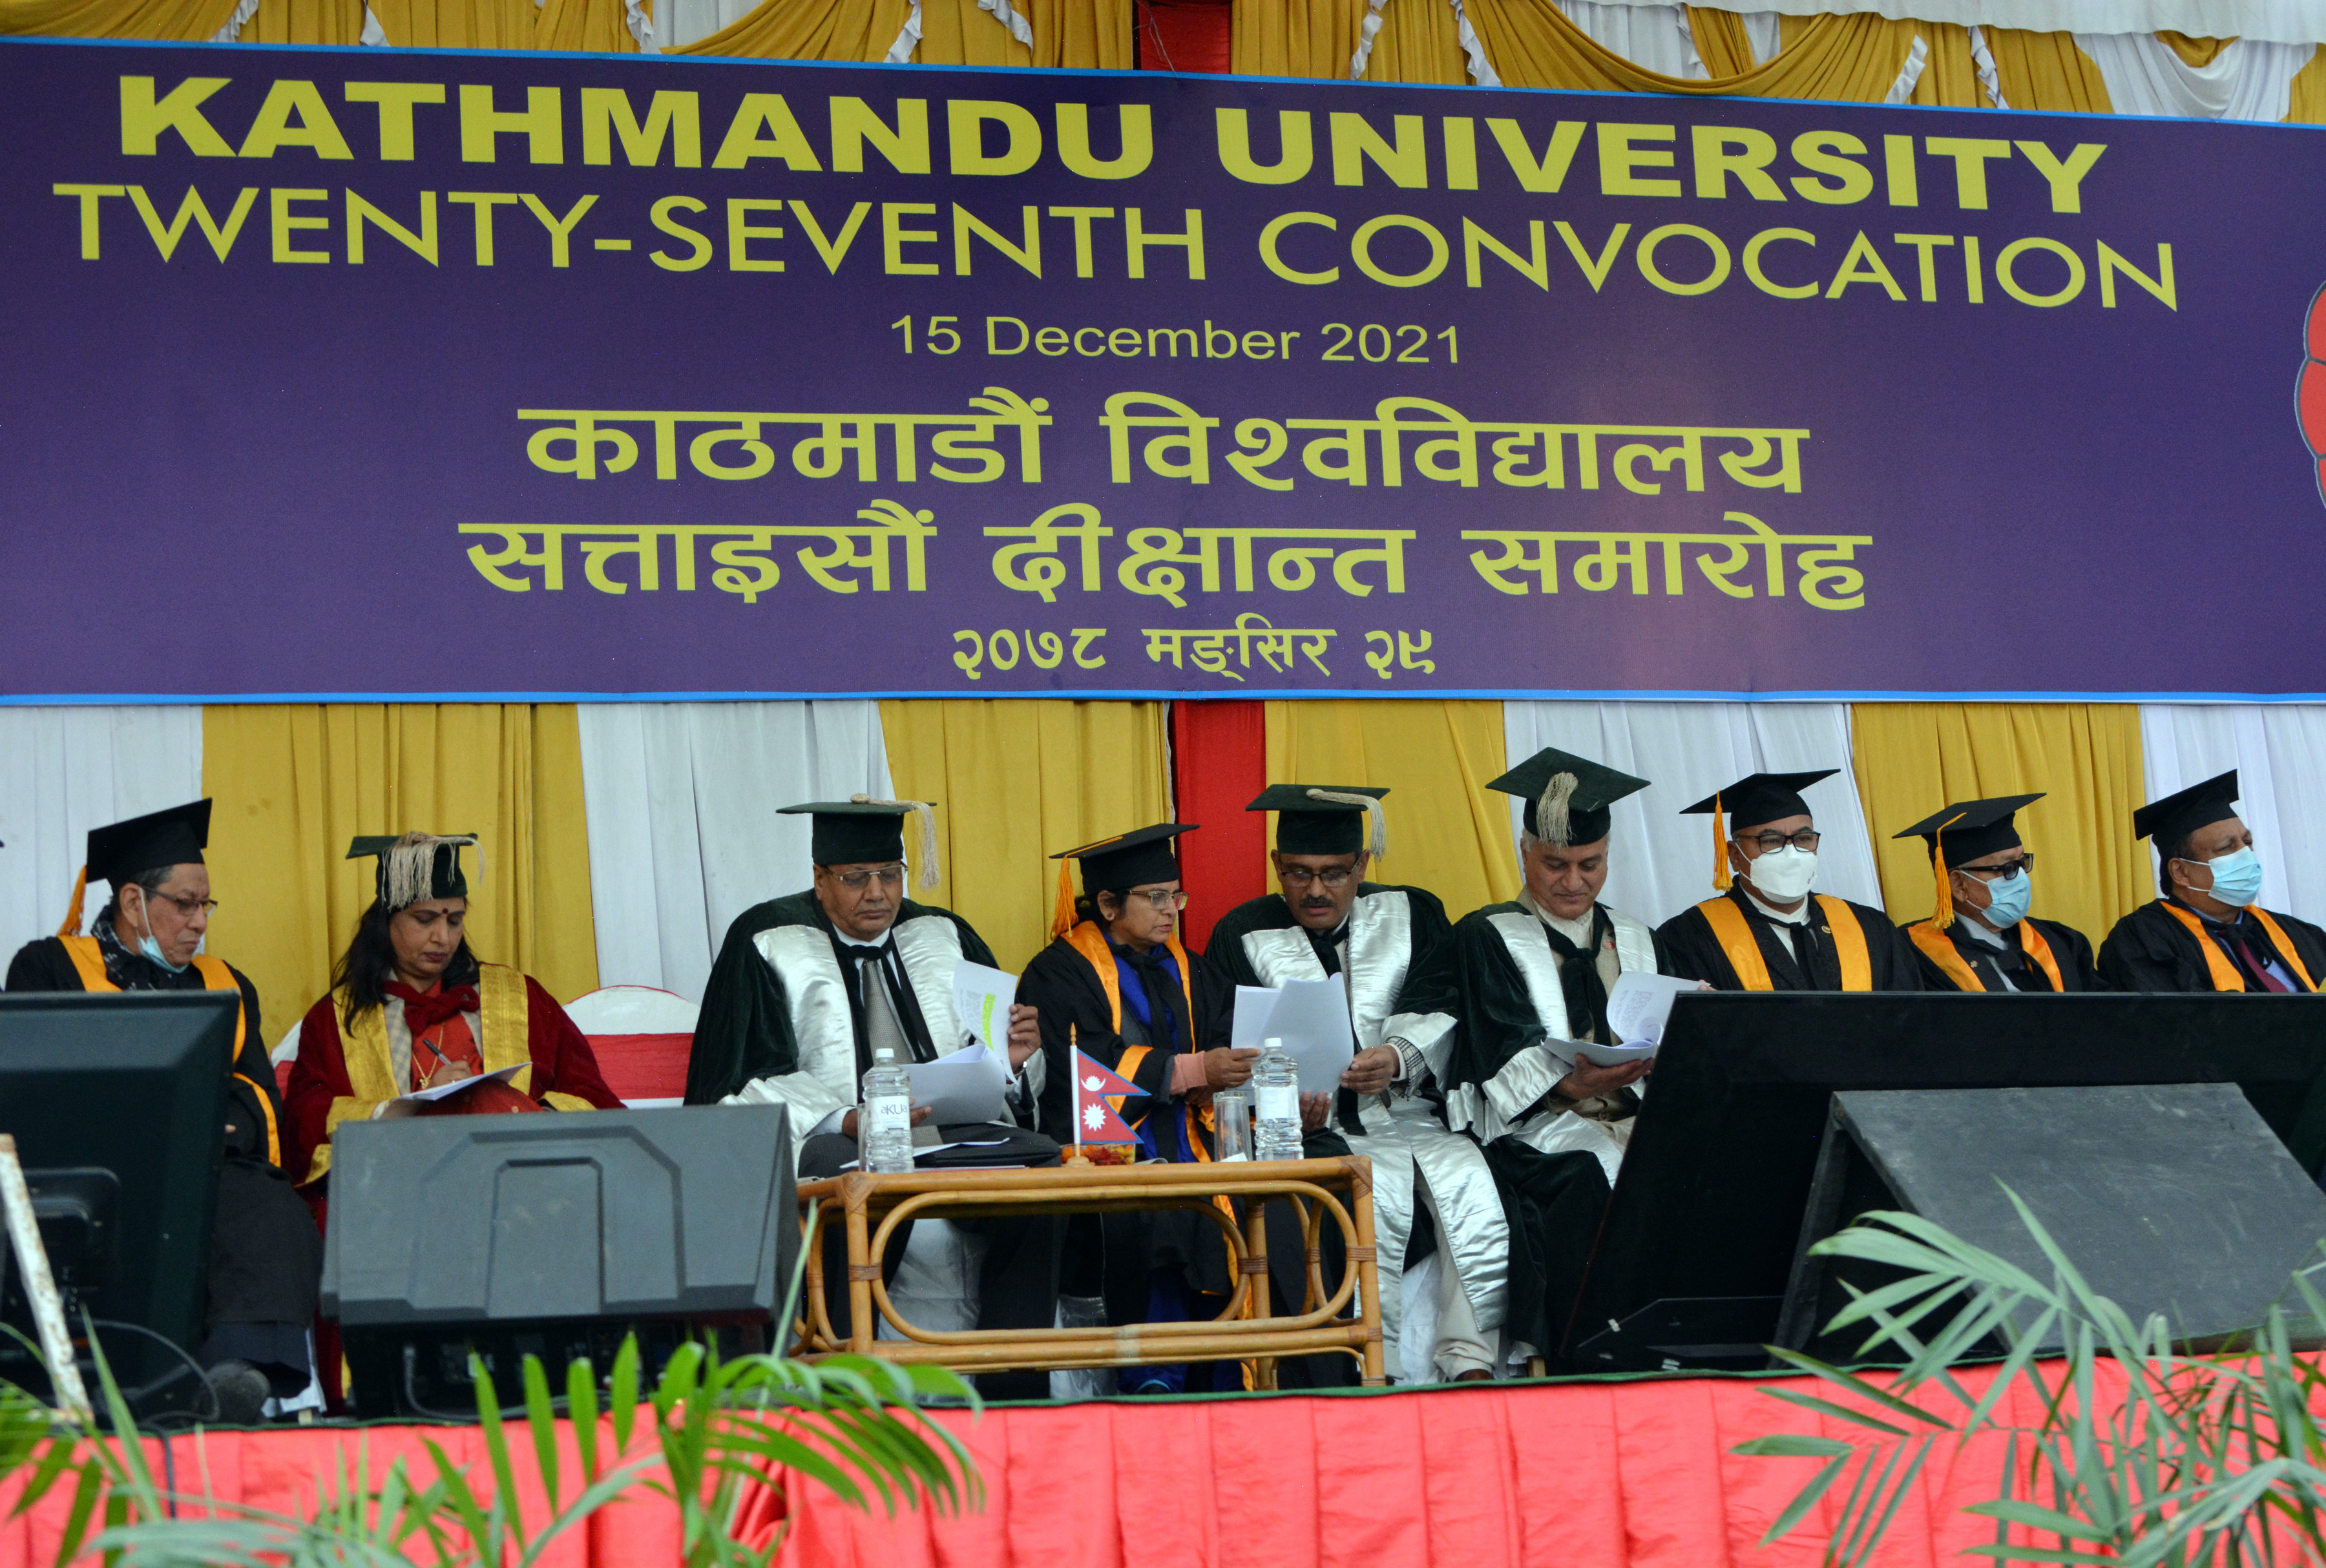 शैक्षिक विकास र दक्ष जनशक्ति तयार गर्न काठमाडौँ विश्वविद्यालयको योगदान महत्वपूर्ण: प्रधानमन्त्री देउवा